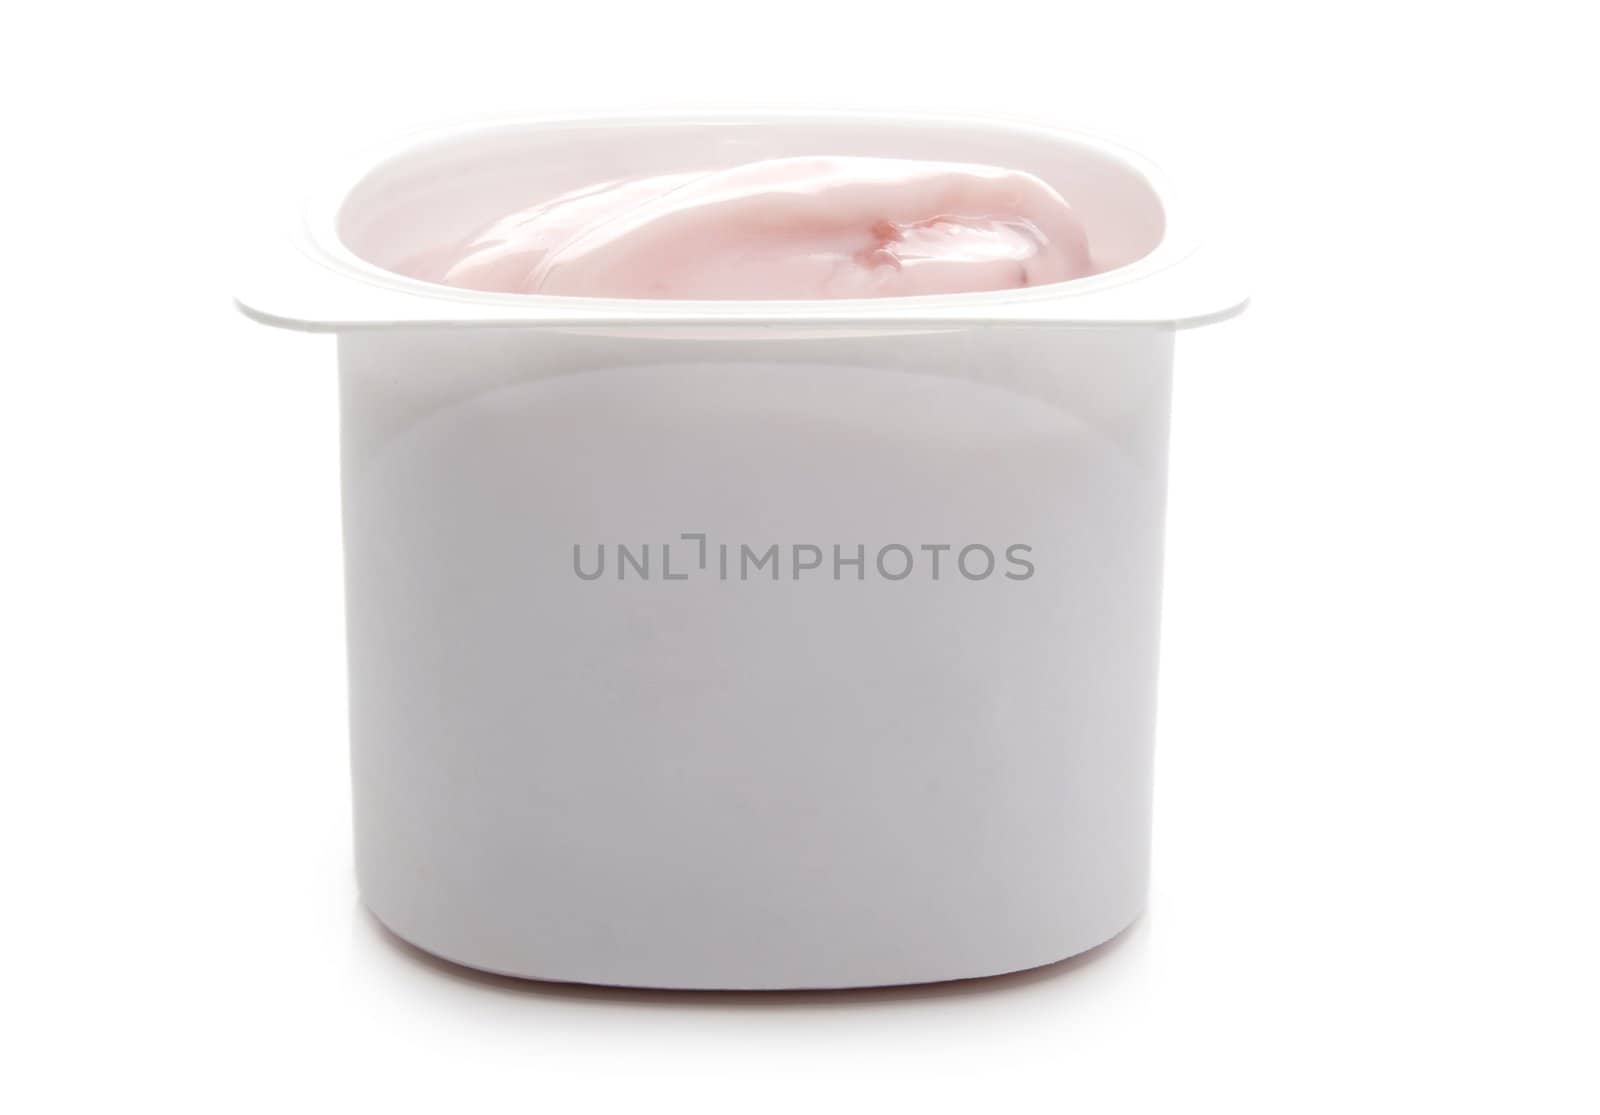 single portion of strawberry yogurt, isolated on white